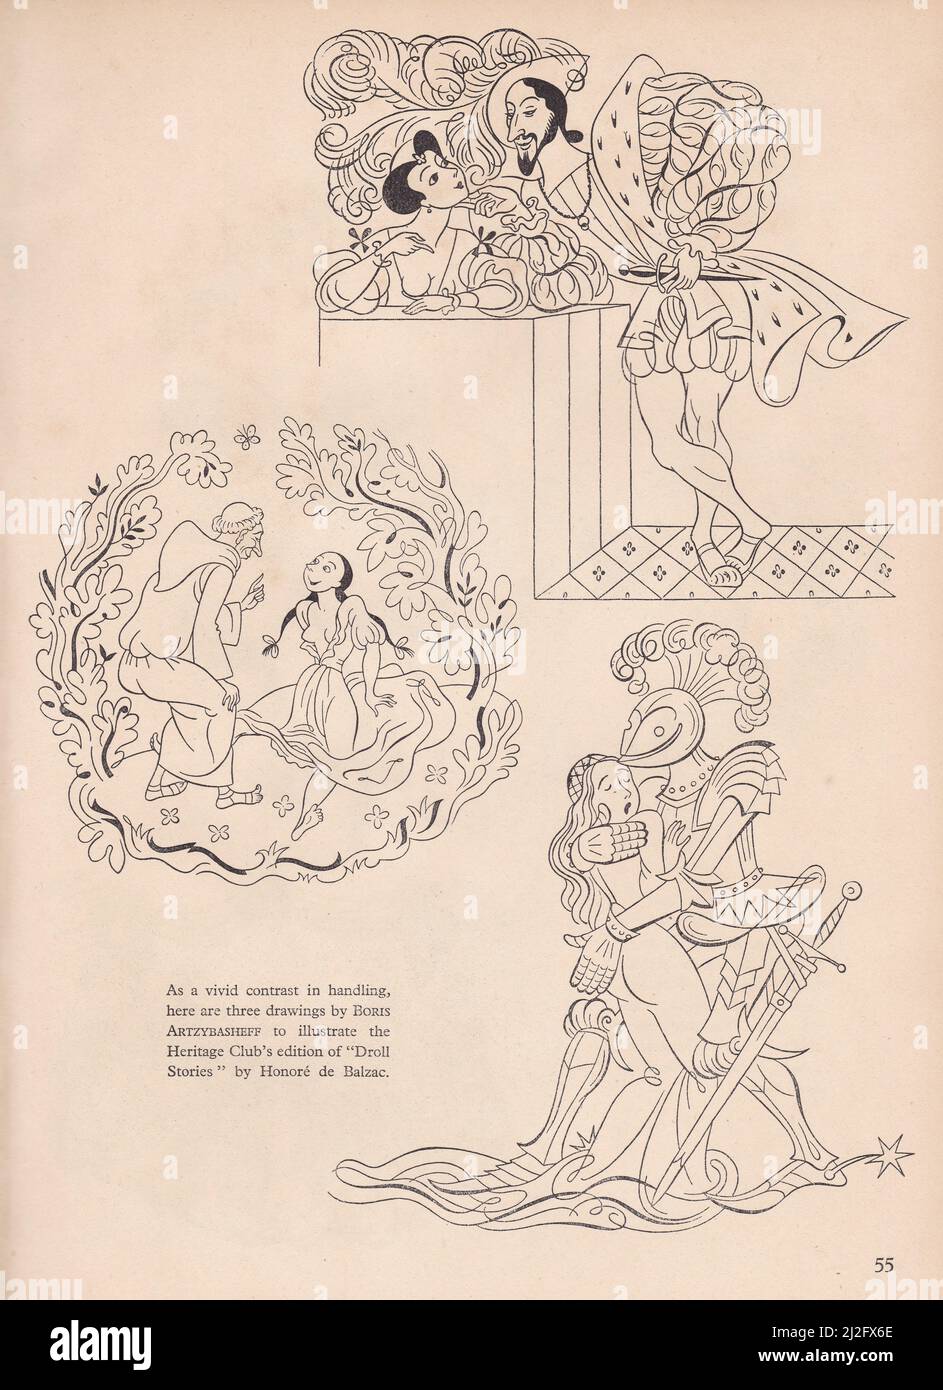 Zeichnungen von Boris Artzybasheff - The Heritage Club Edition von Droll Stories von Honore de Balzac. Stockfoto